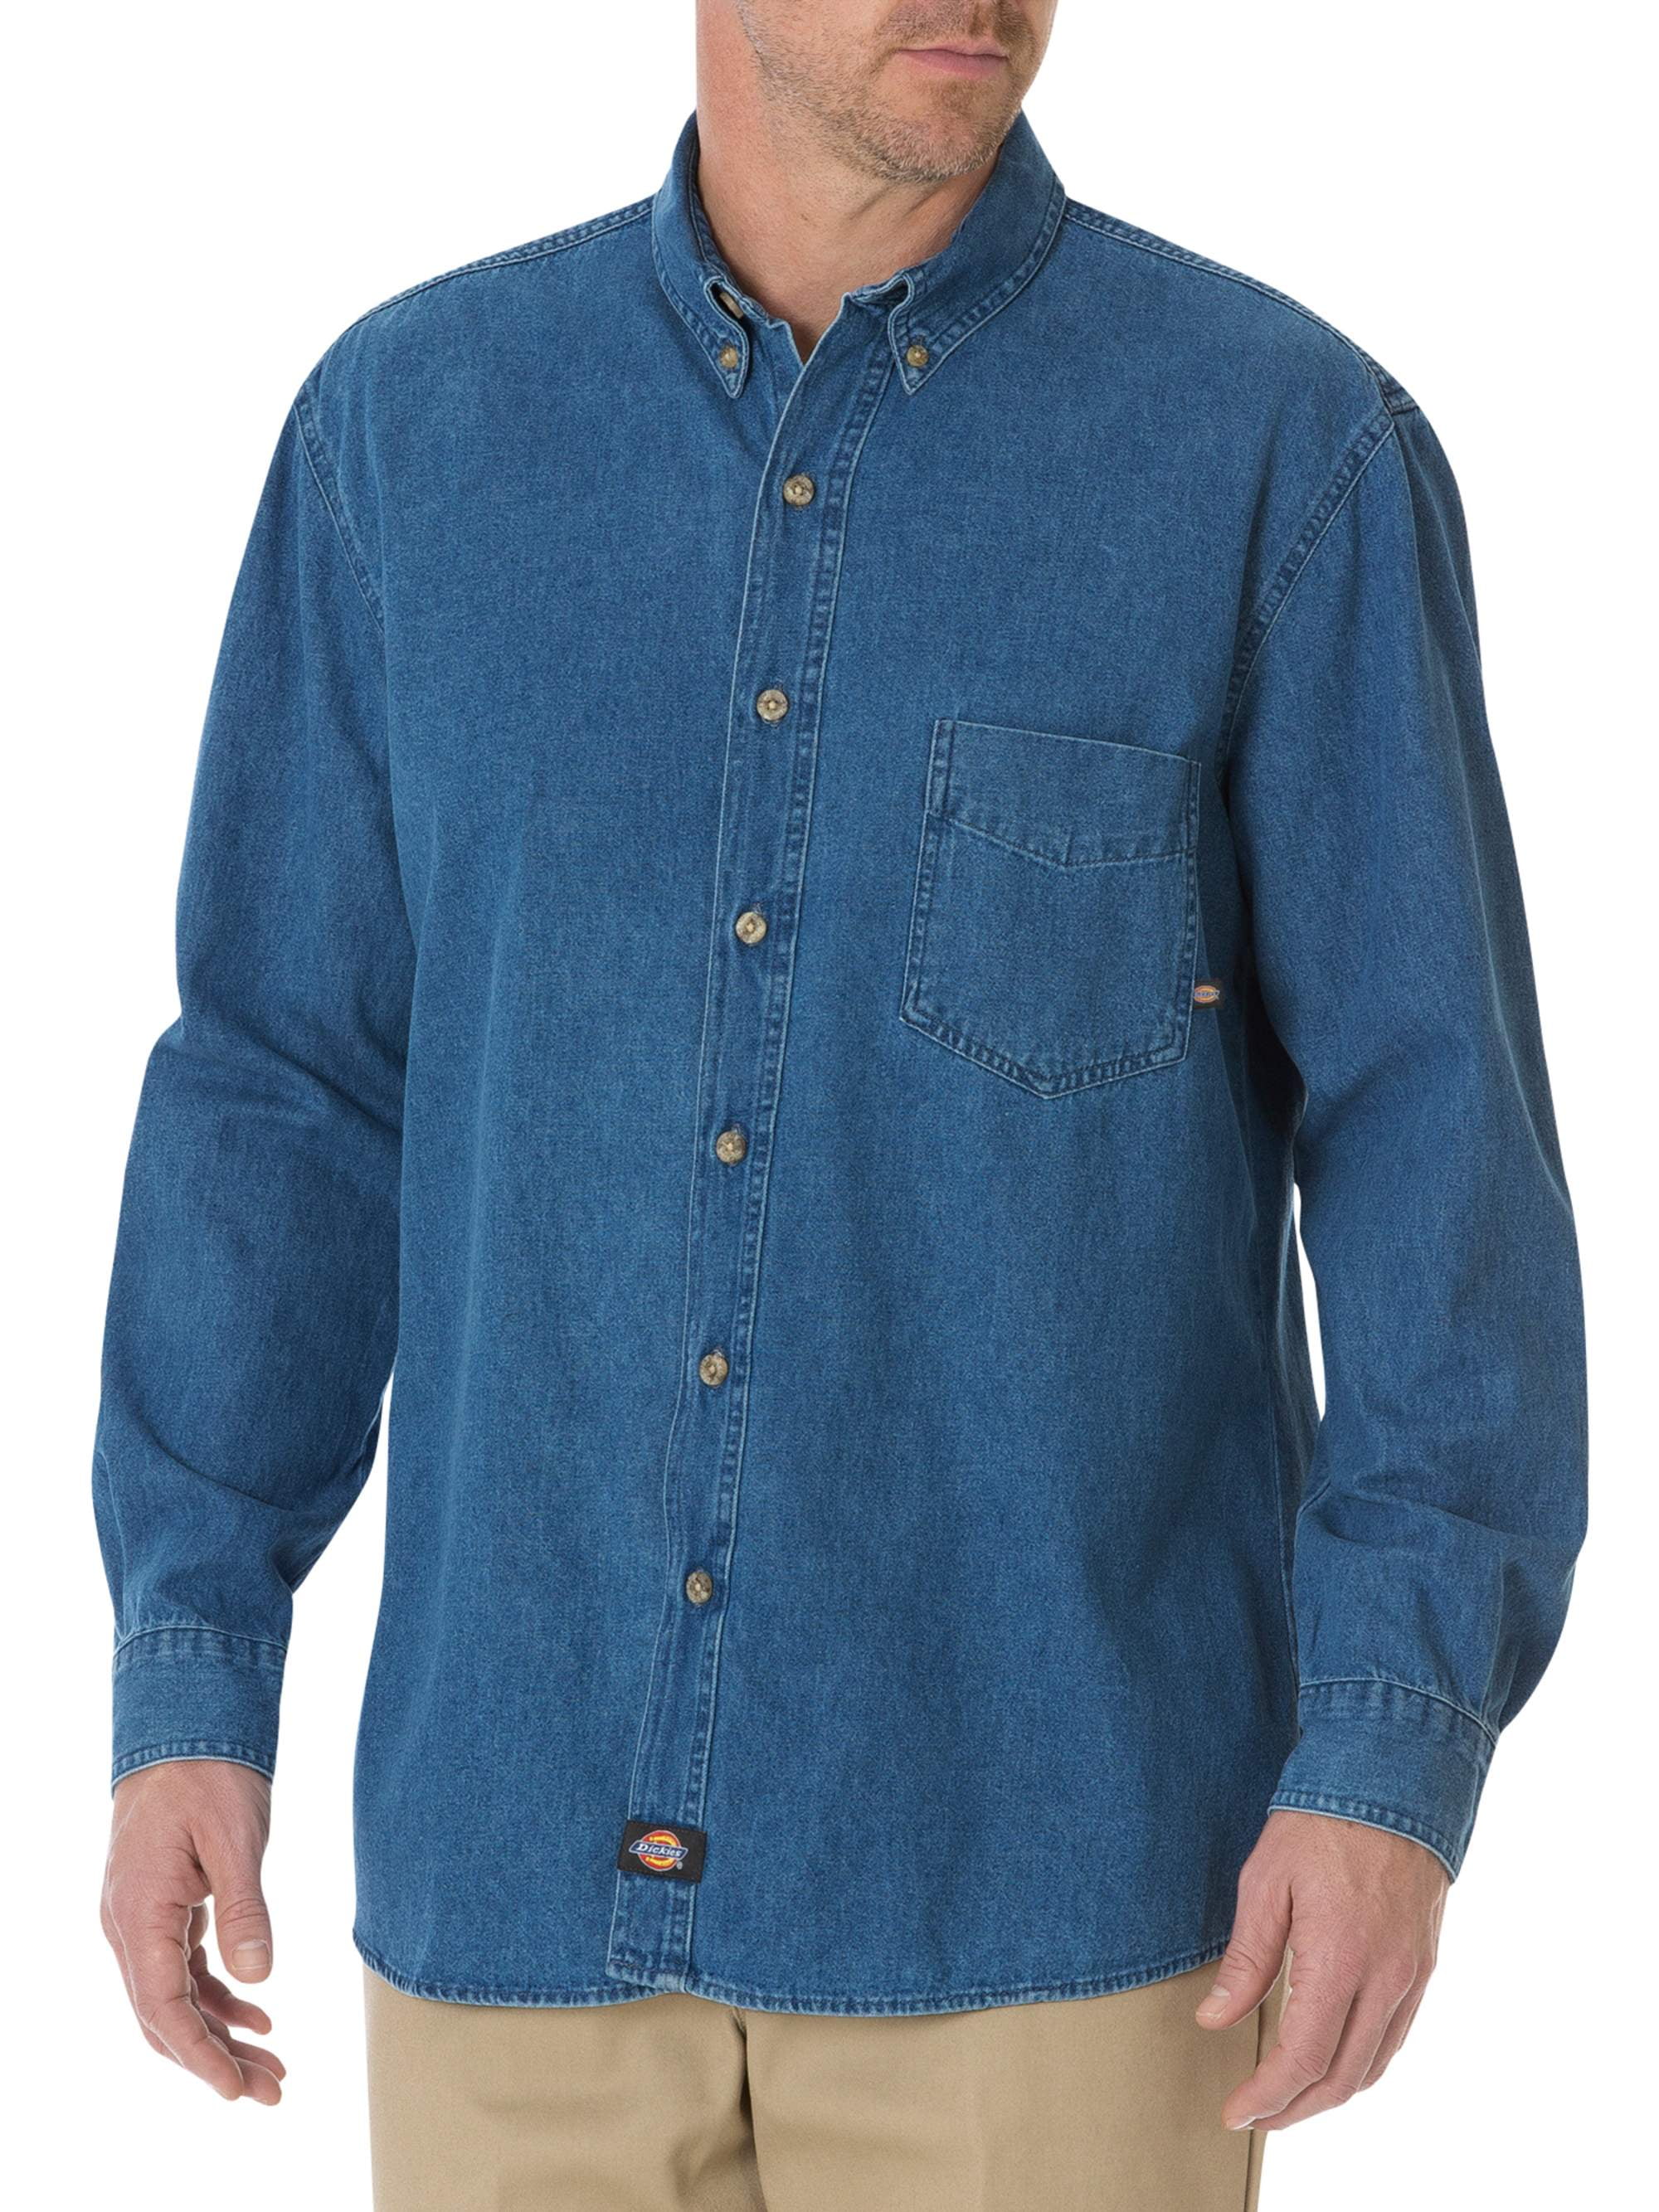 Men's Long Sleeve Denim Work Shirt - Walmart.com